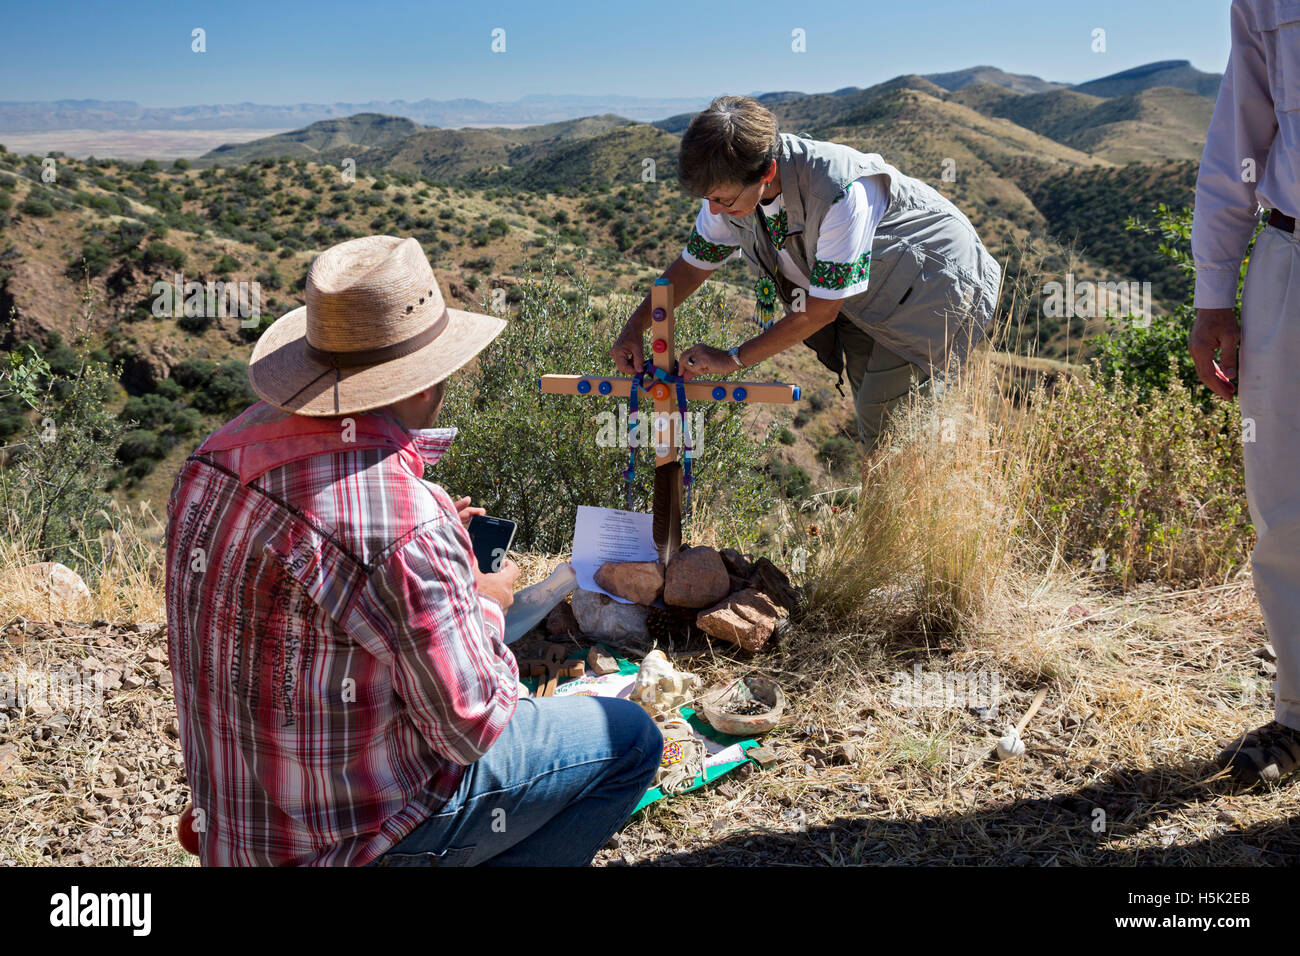 Bisbee, Arizona - Cruz marca el lugar donde un migrante no identificado murieron tratando de cruzar la frontera México-EUA. Foto de stock